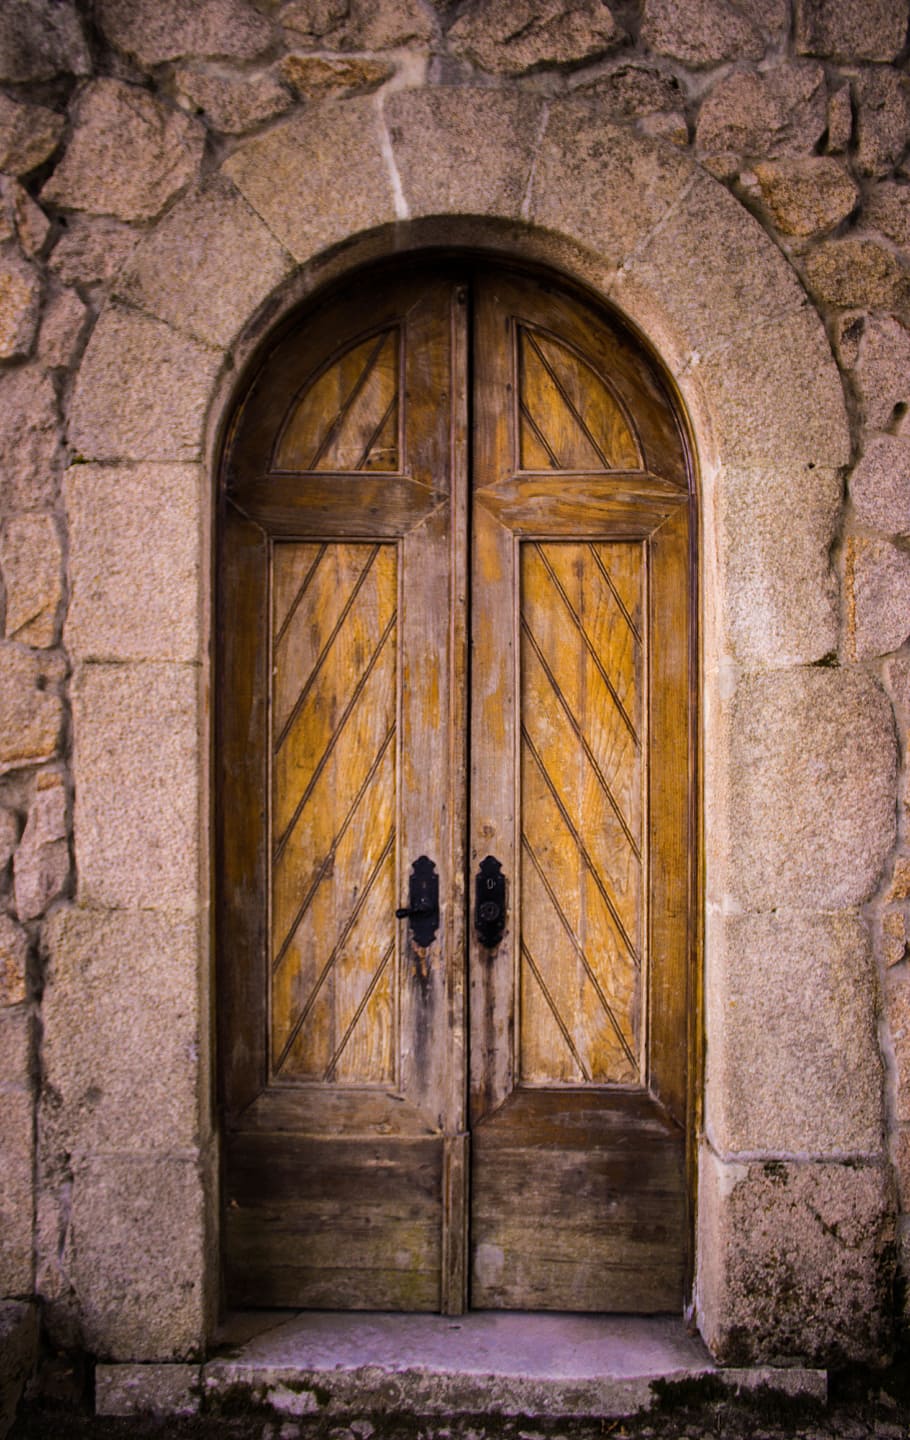 closed wooden door, door, old door, wood door, entrance, antique, architectural, old, architecture, stone